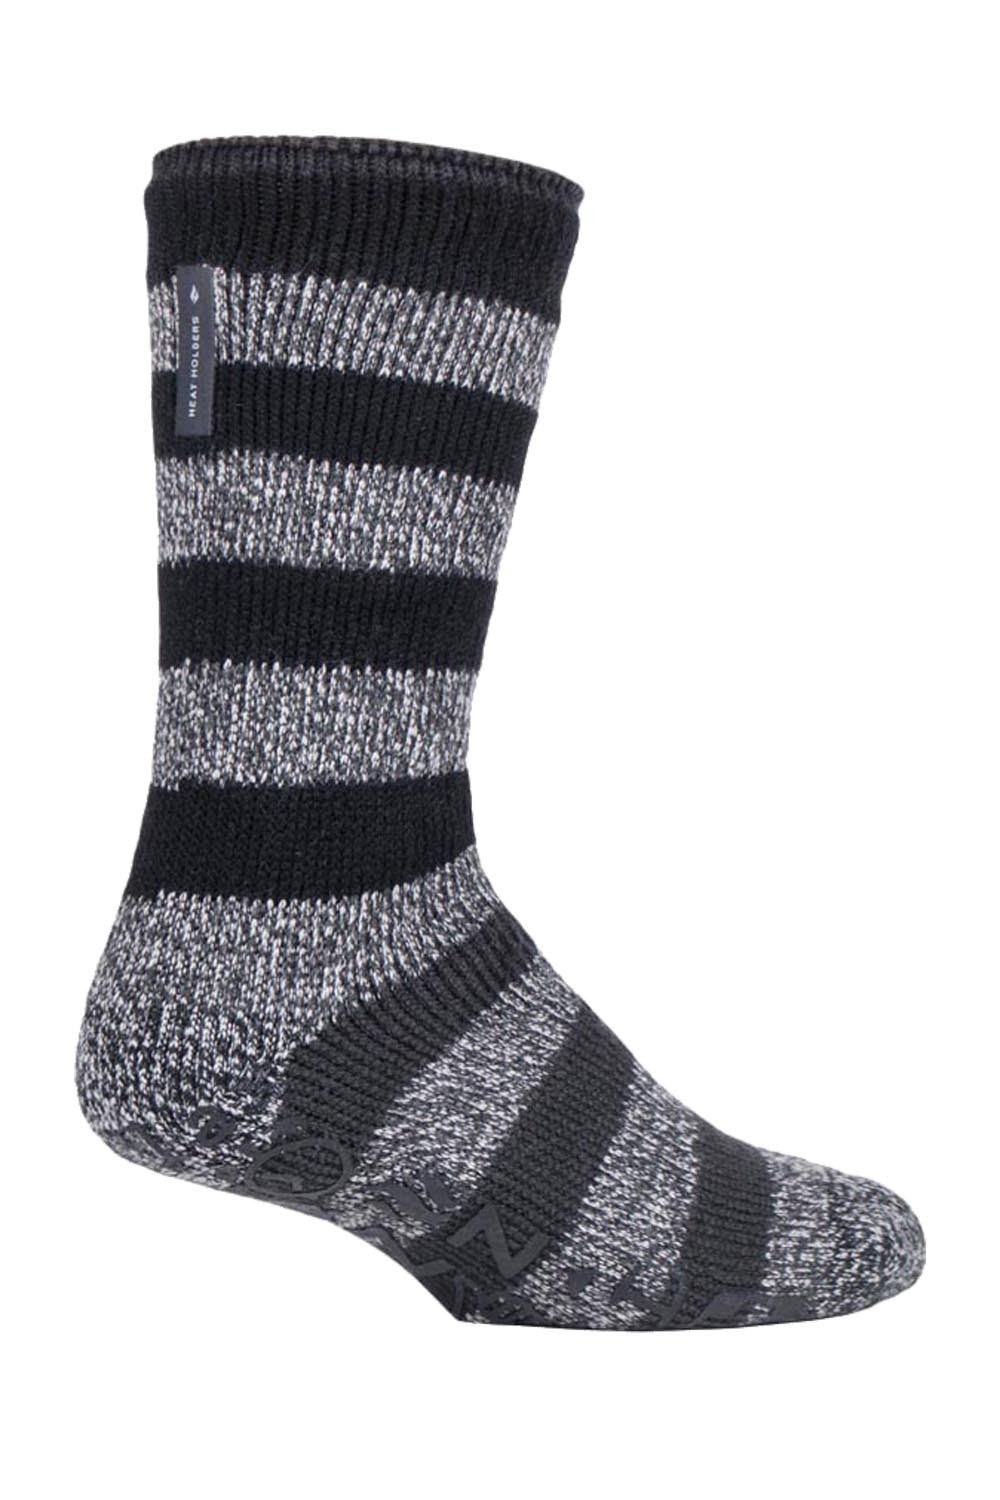 Mens Fleece Lined Non Slip Socks -